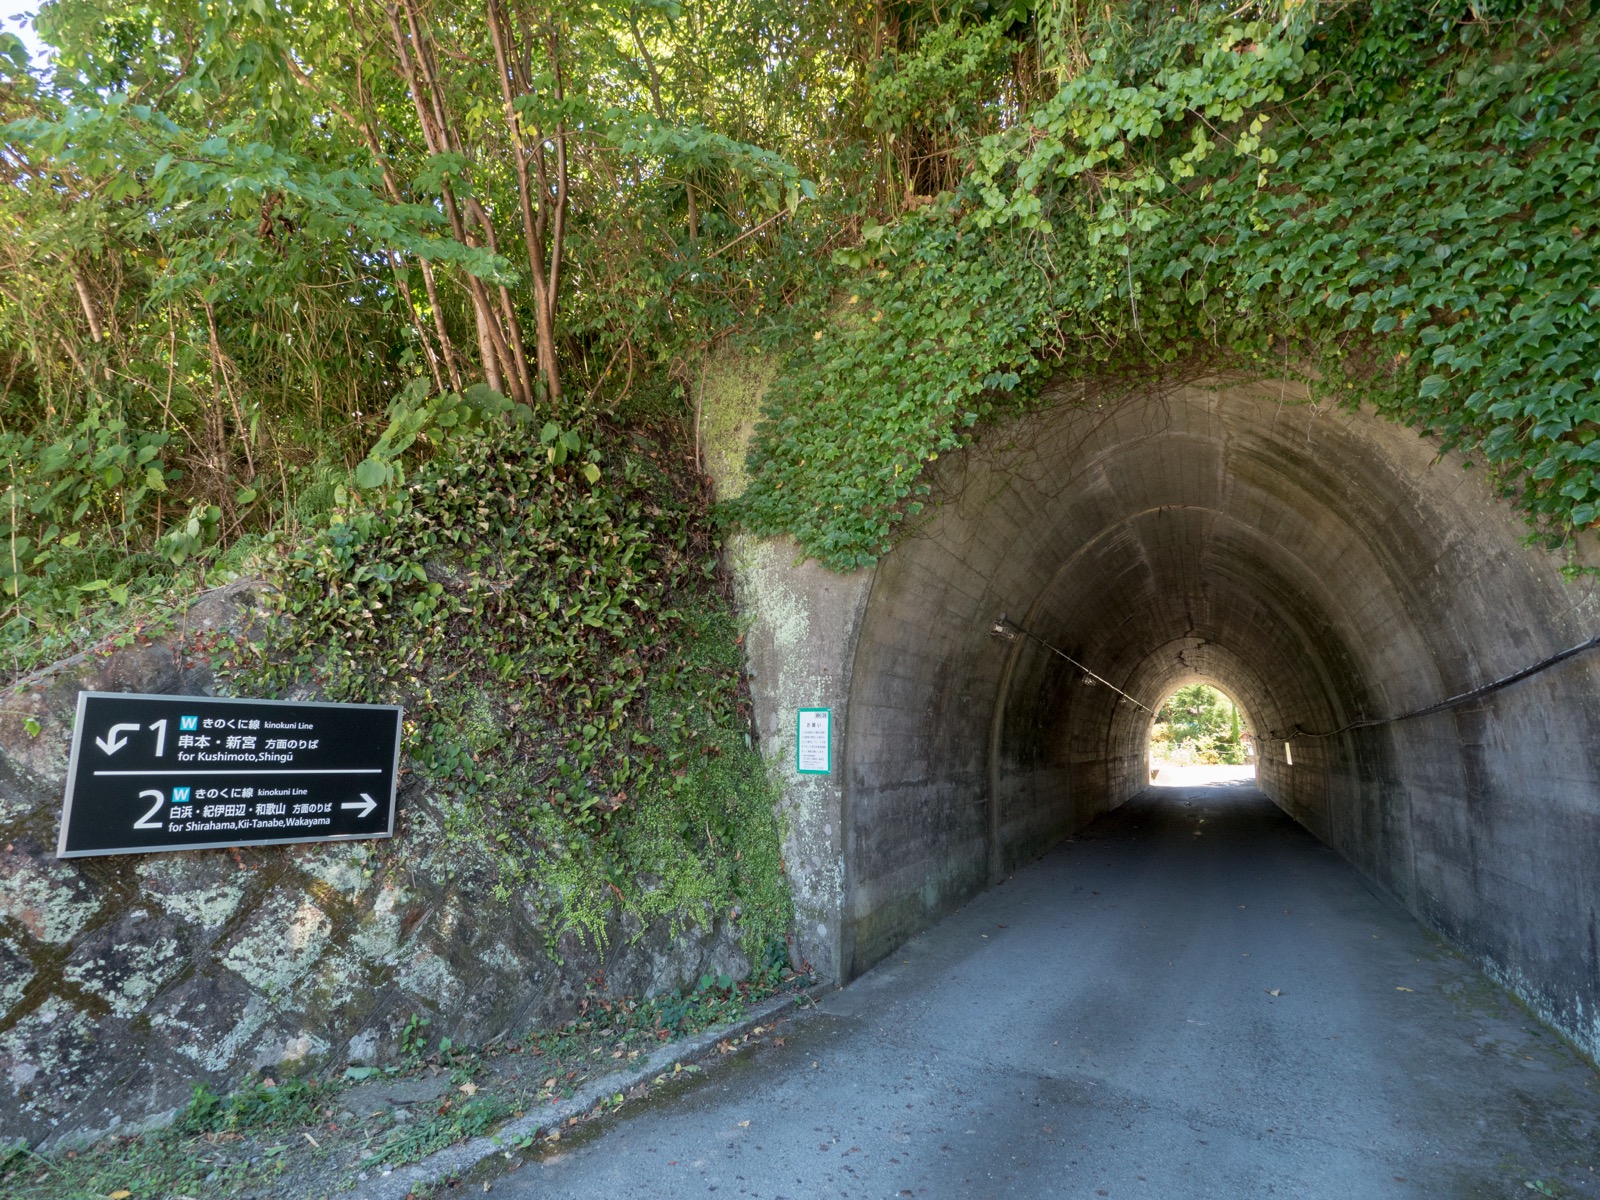 和深駅前のトンネルとホーム案内表示